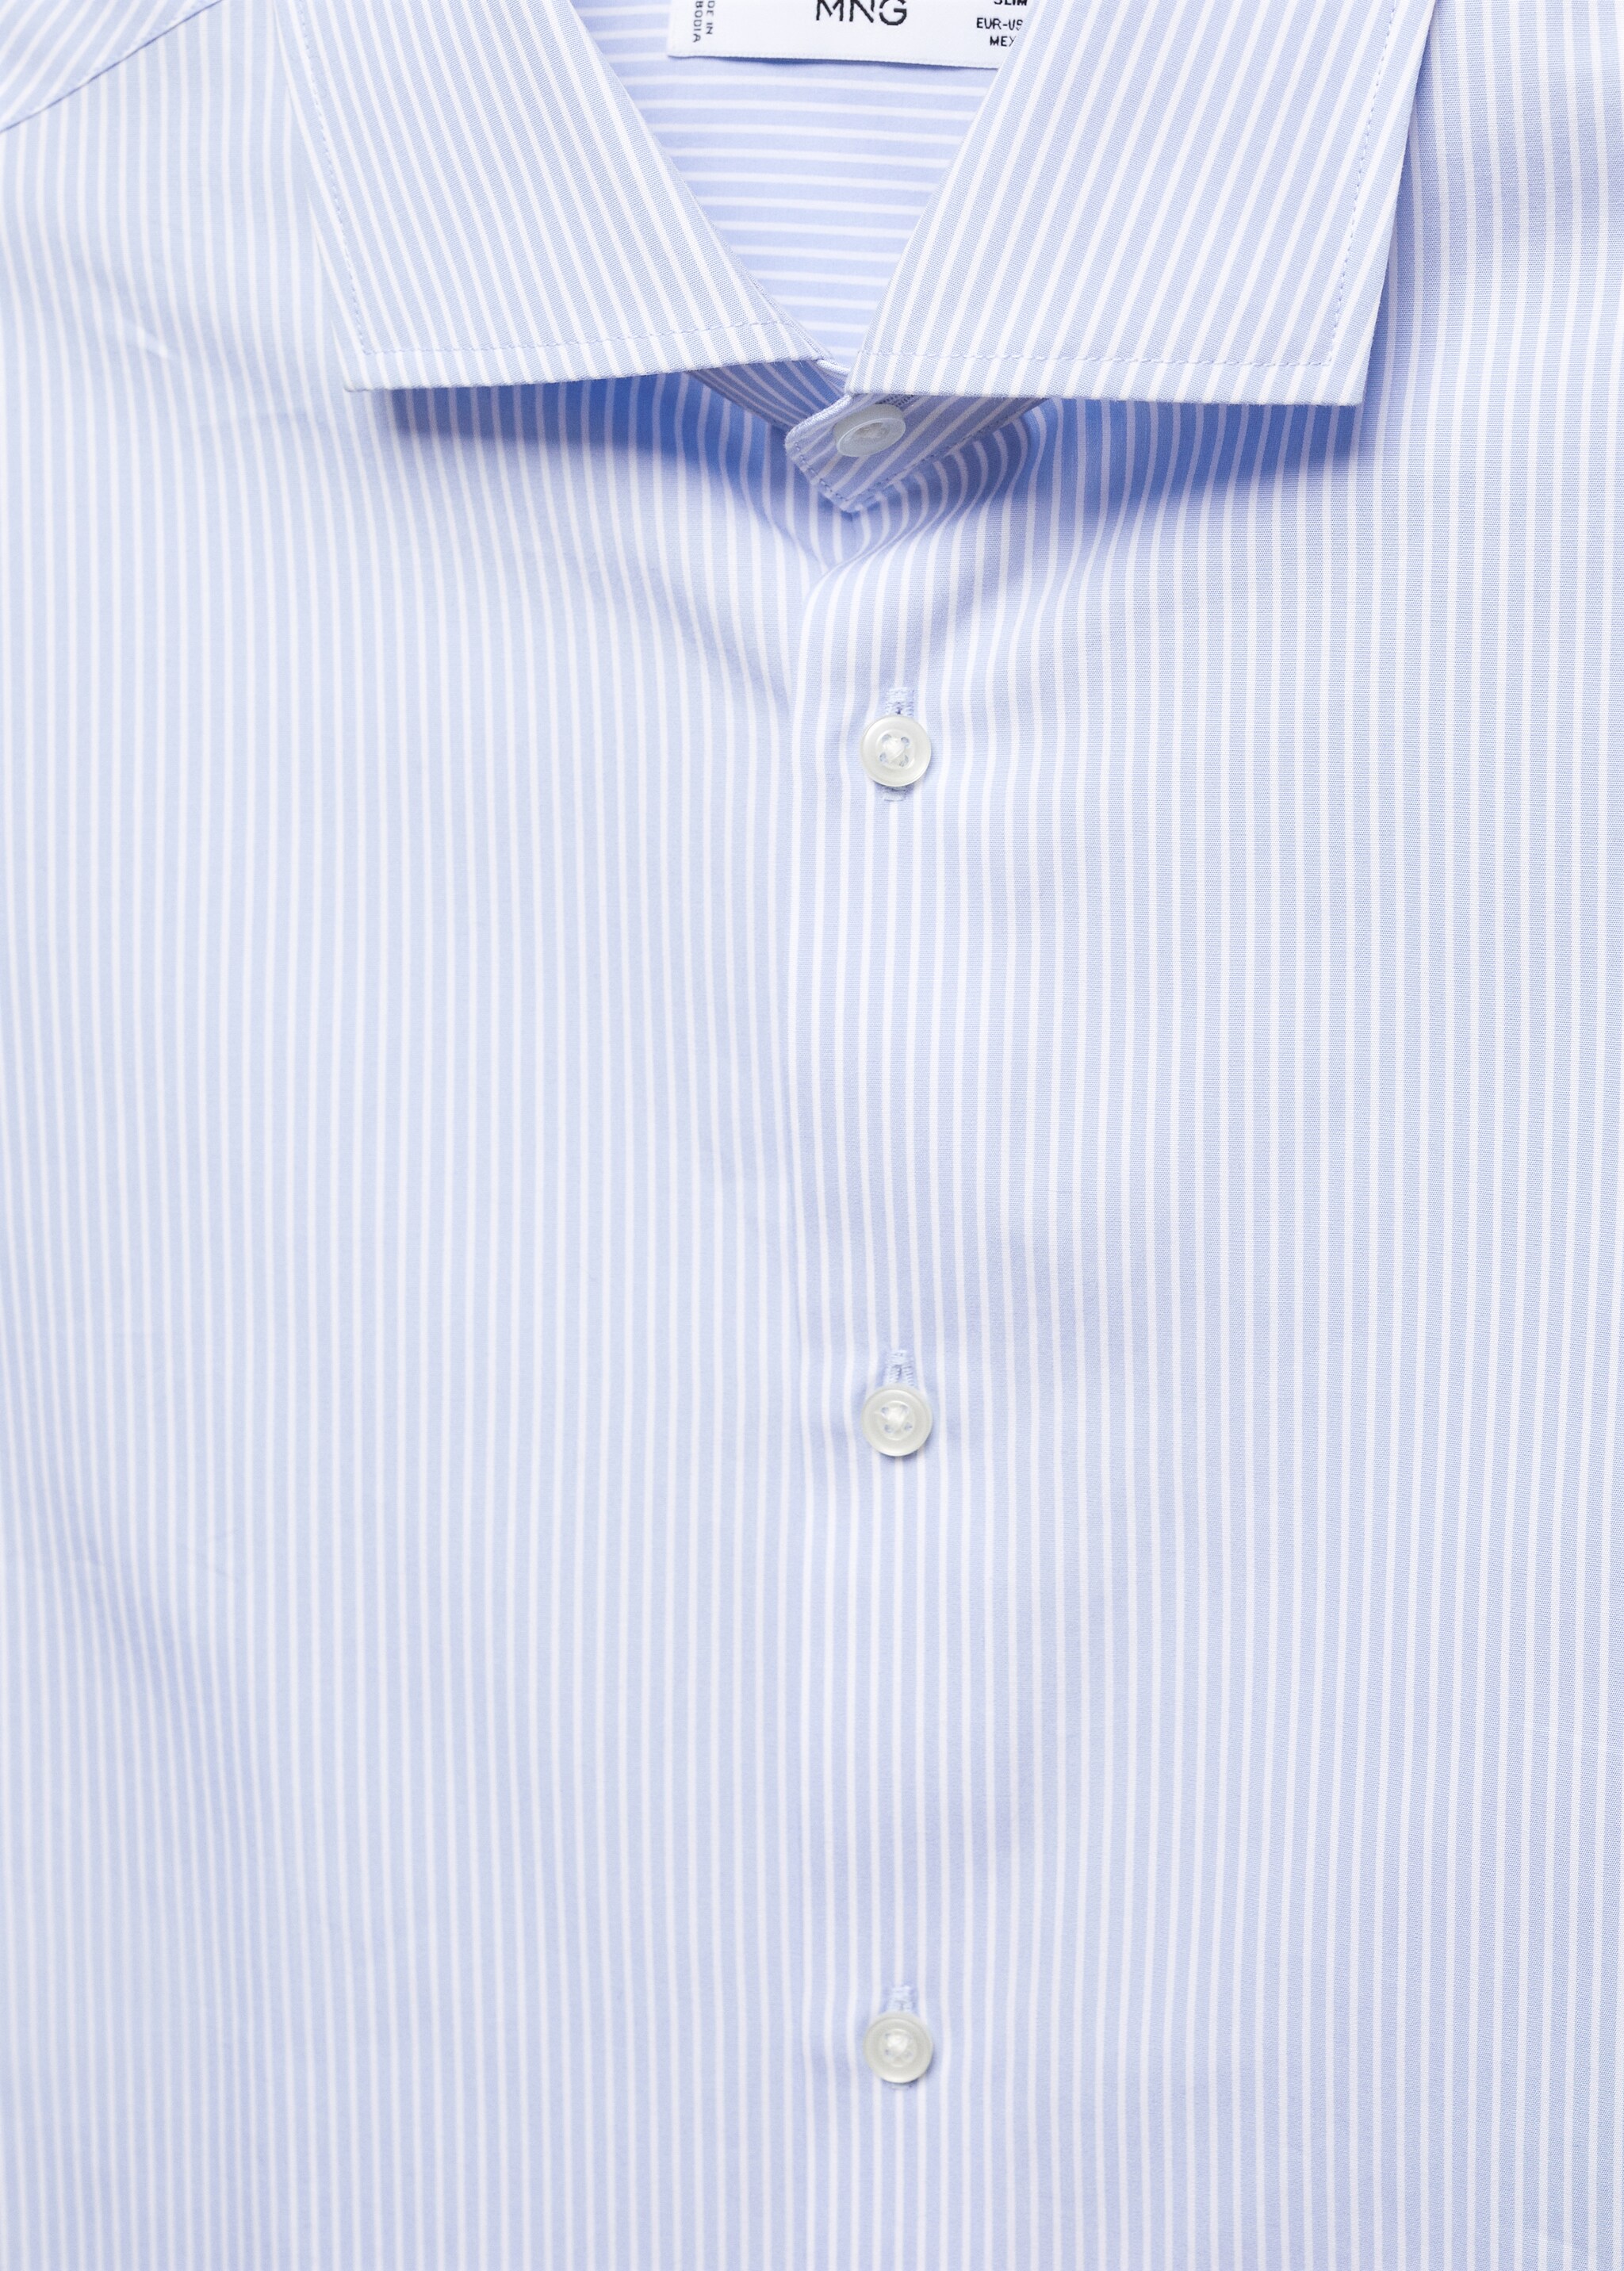 Camisa slim fit de 100% algodão - Pormenor do artigo 8